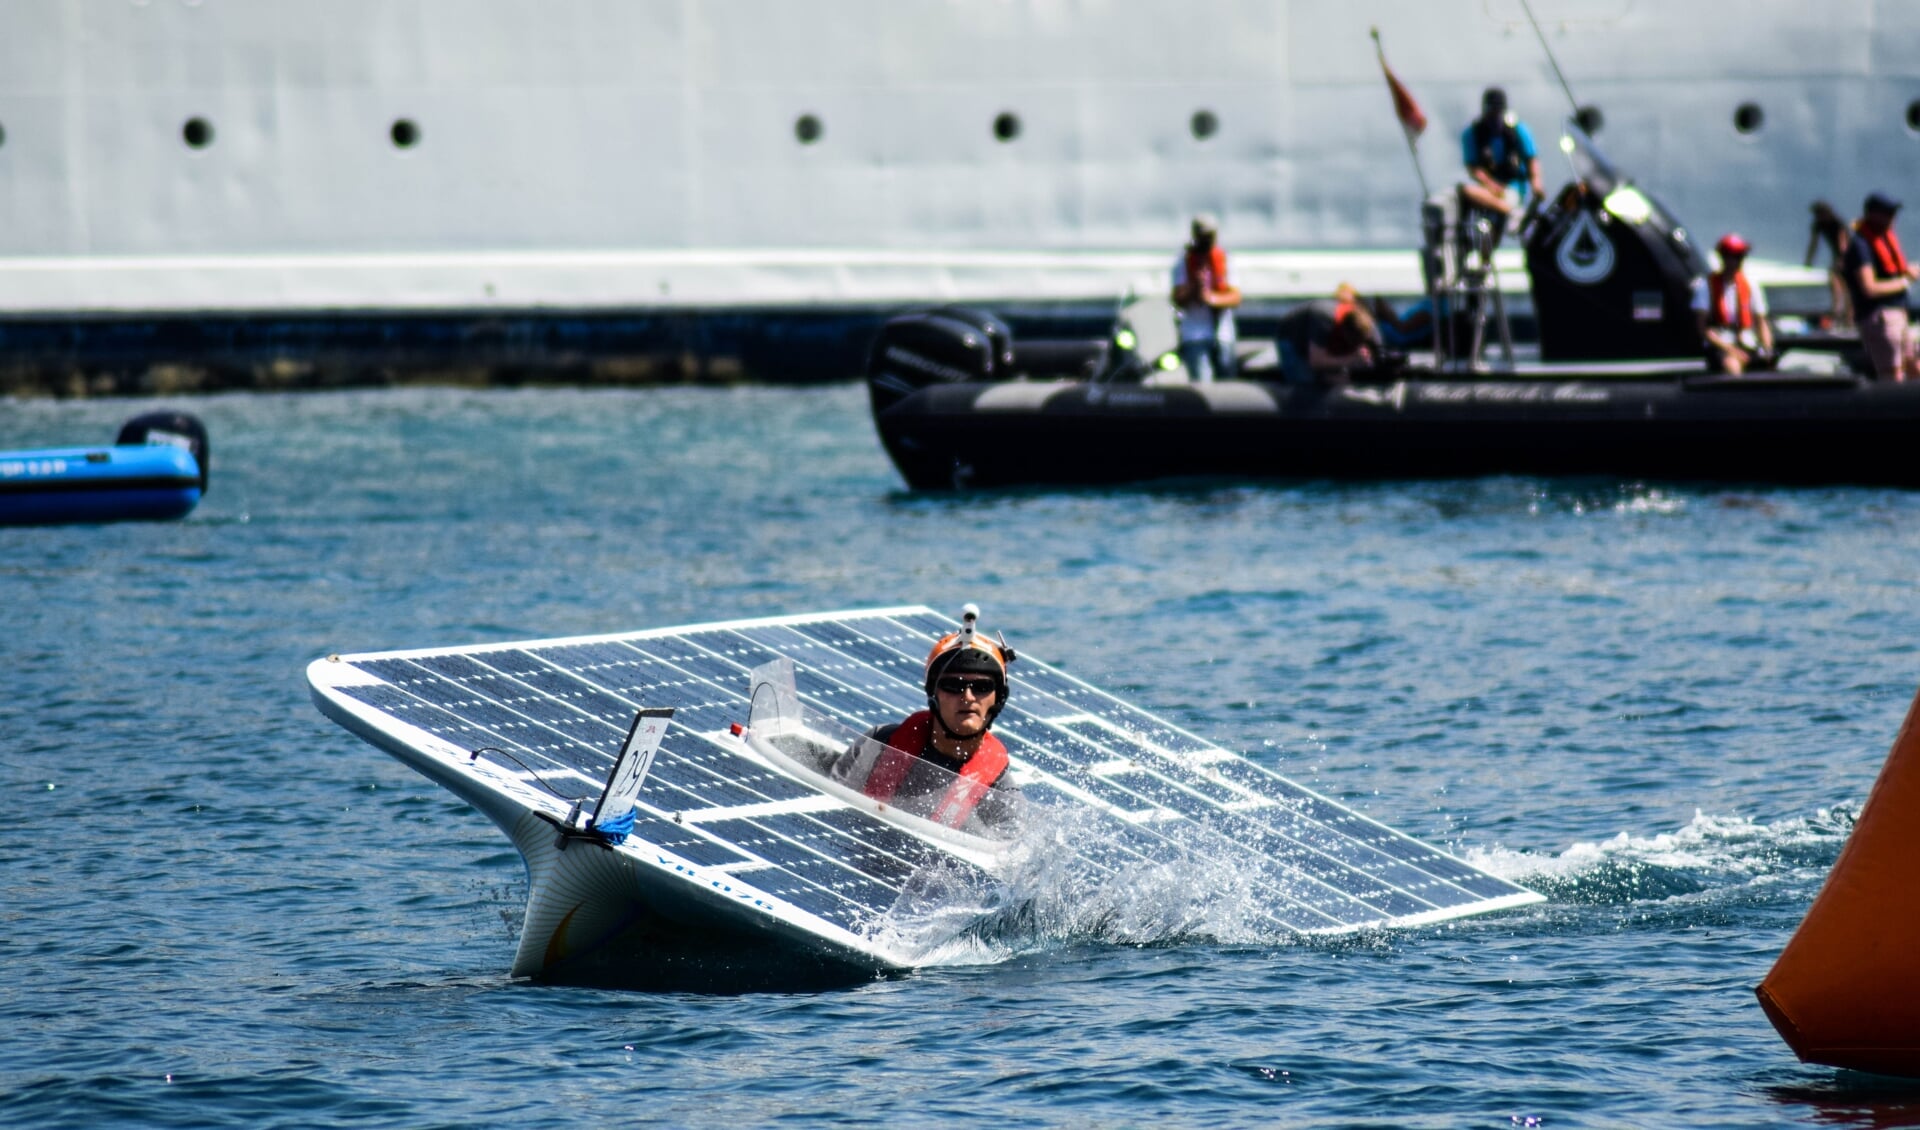 De TU Delft Solar Boat 2018 tijdens de race in Monaco in juli 2018. Inzet: Casper van der Horst. | Foto's: PR